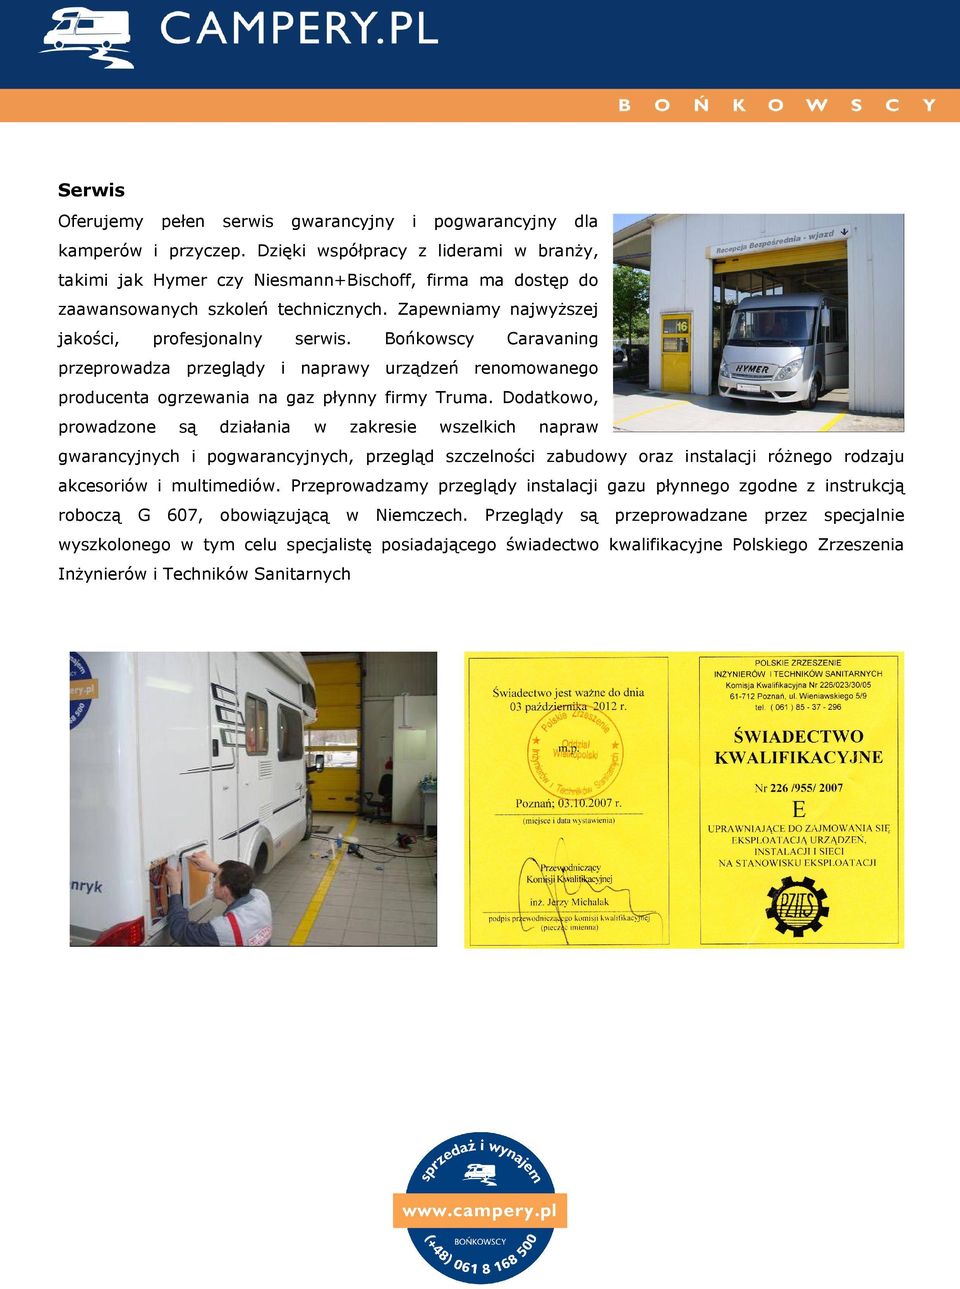 Bońkowscy Caravaning przeprowadza przeglądy i naprawy urządzeń renomowanego producenta ogrzewania na gaz płynny firmy Truma.